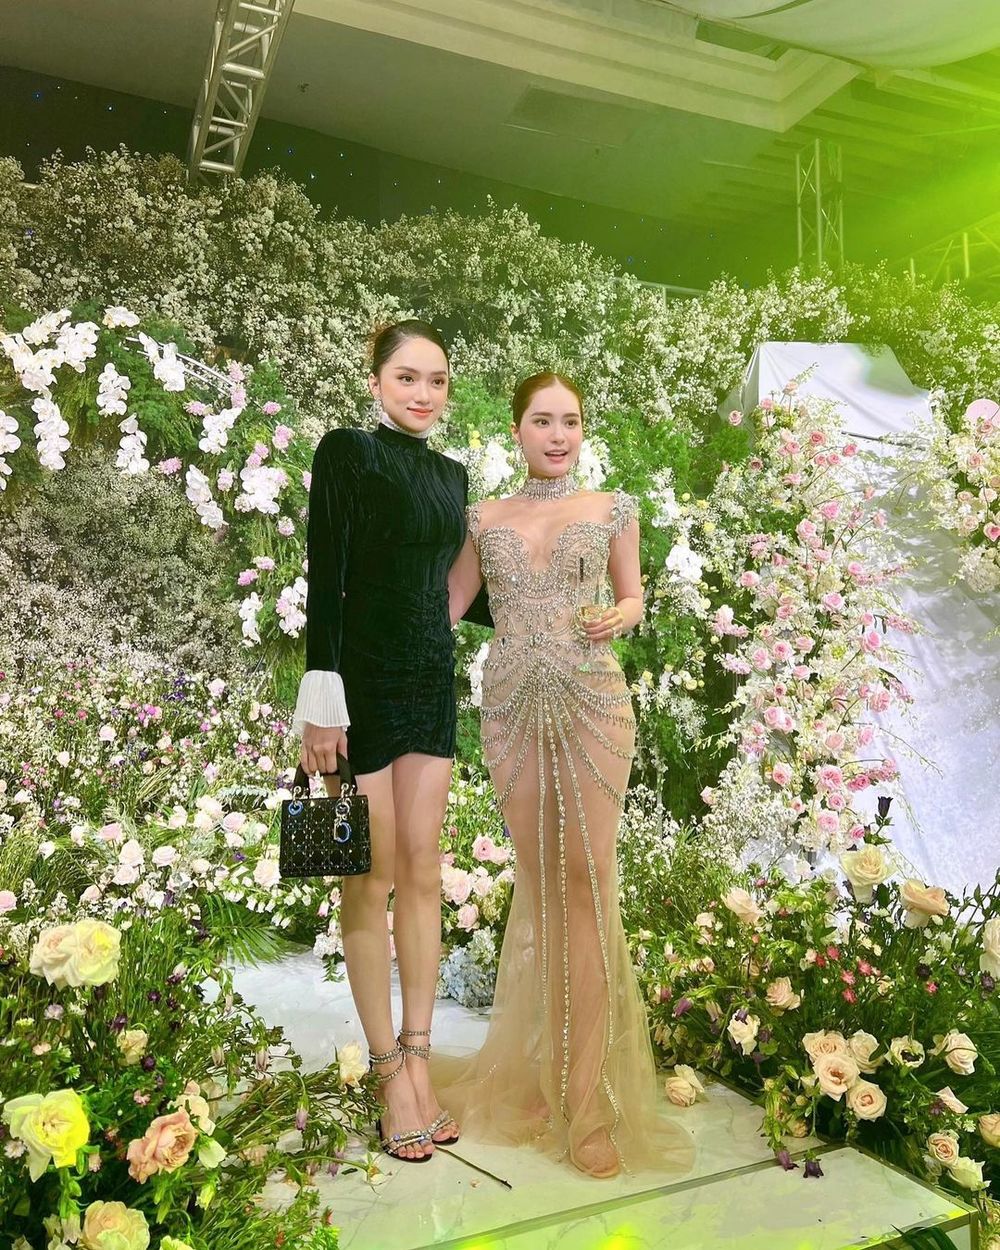  Hương Giang đọ sắc cùng Đoàn Di Băng tại không gian ngập hoa của bữa tiệc. (Ảnh: Instagram huoggiangggg)